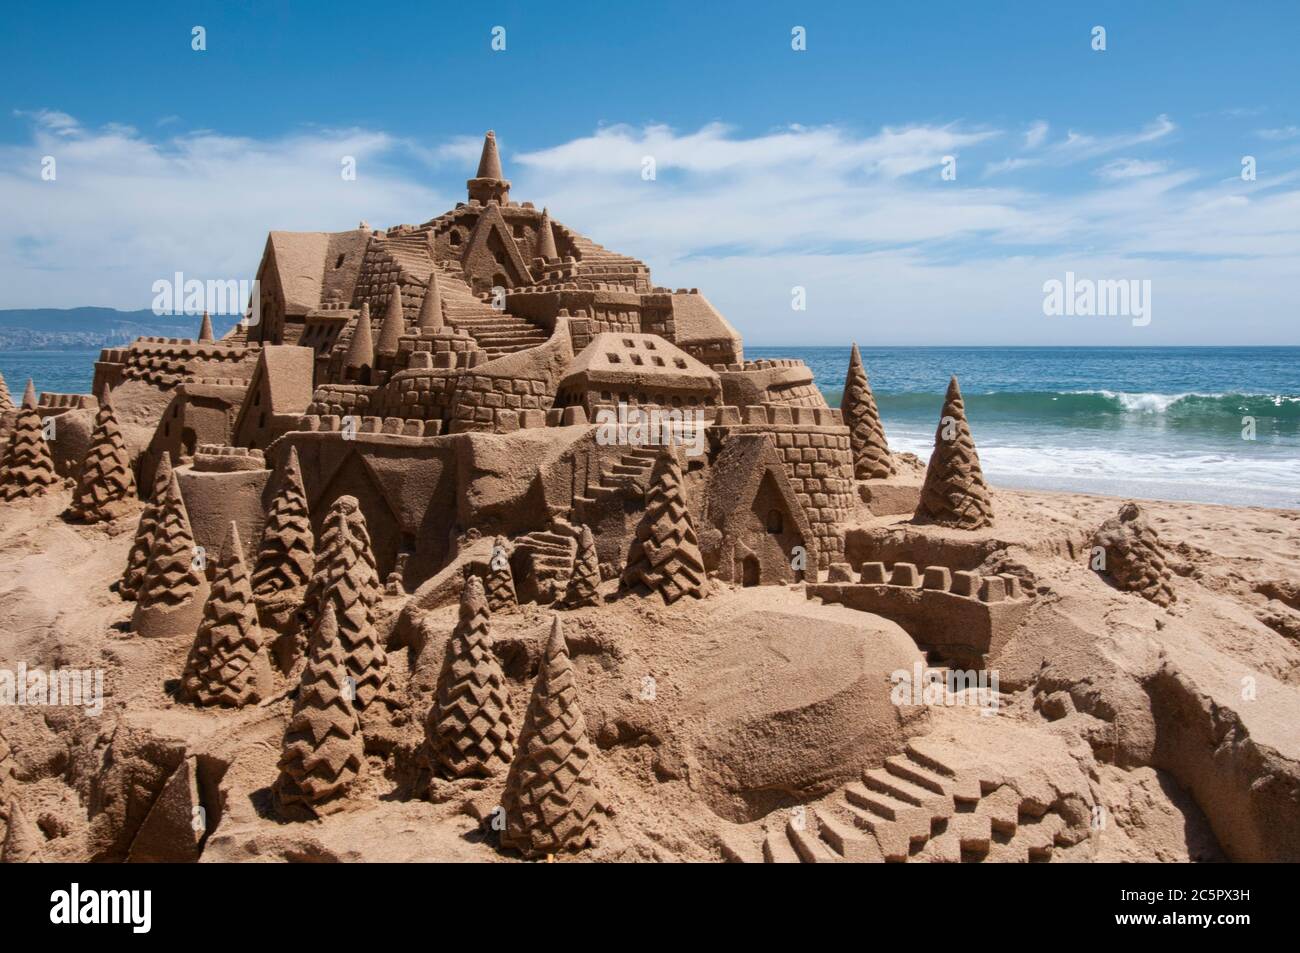 Castello di sabbia su una spiaggia a Reñaca, Cile. Castello di sabbia sulla costa cilena sulla riva dell'Oceano Pacifico. Foto con orientamento orizzontale Foto Stock